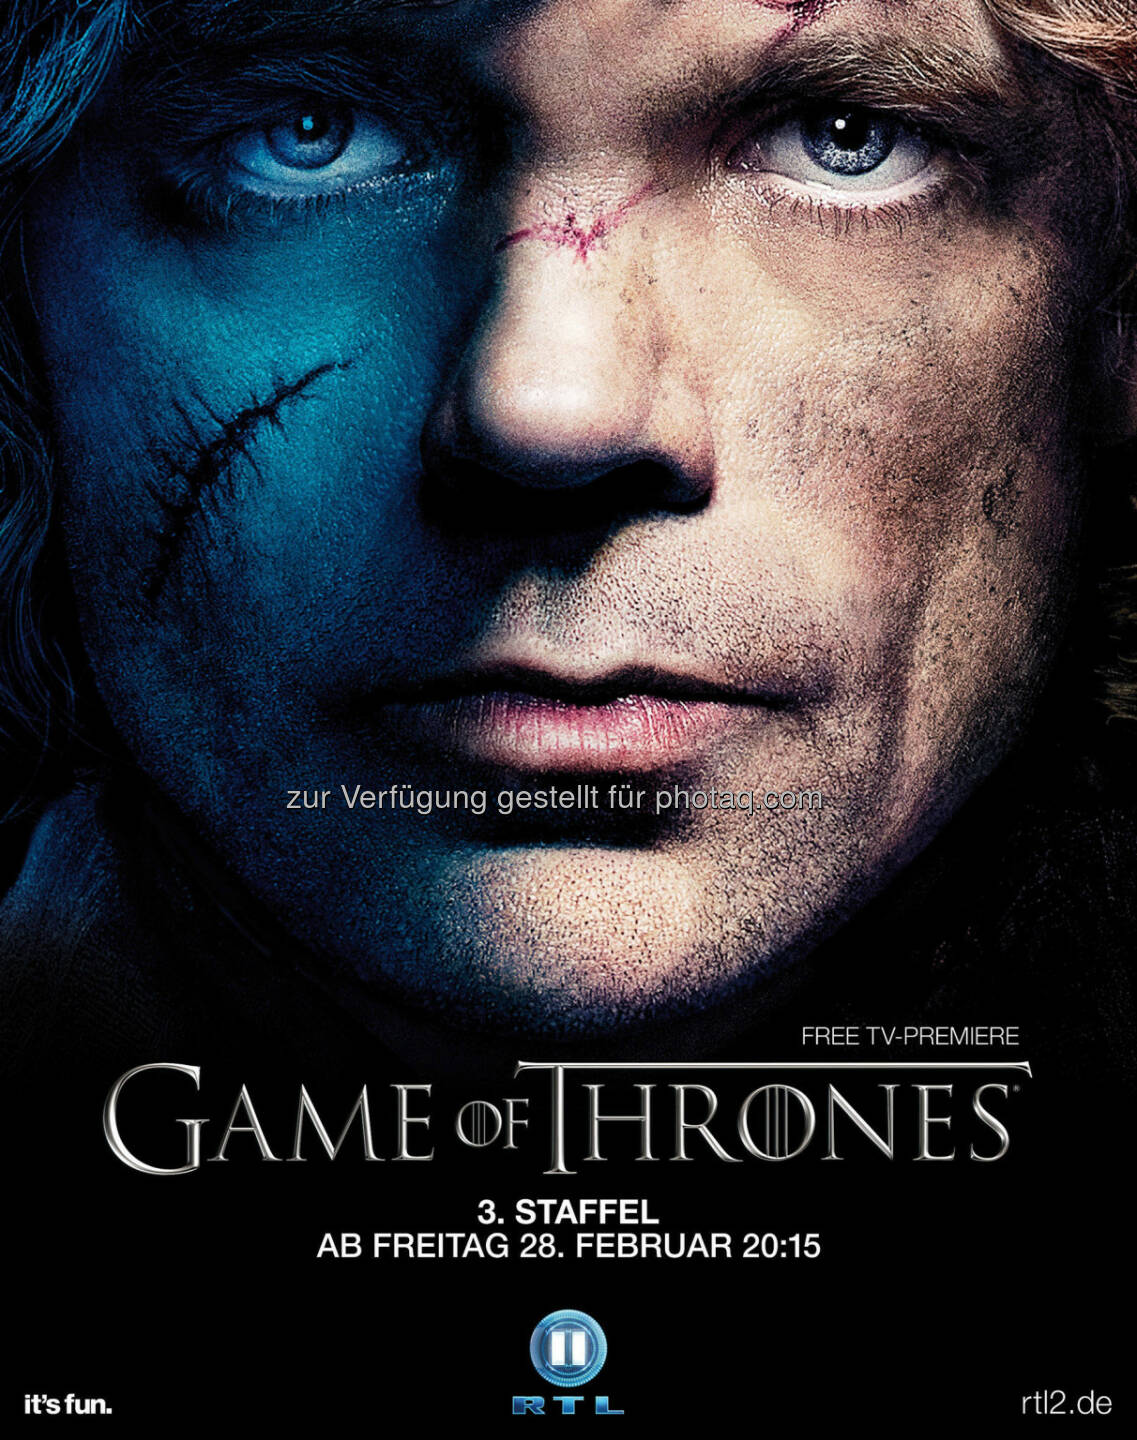 Peter Dinklage als Tyrion Lennister, Plakatmotiv zum Start der dritten Staffel von Game Of Thrones am Freitag, den 28. Februar 2014 um 20:15 Uhr bei RTL II, (C) HBO Enterpreises/RTL II